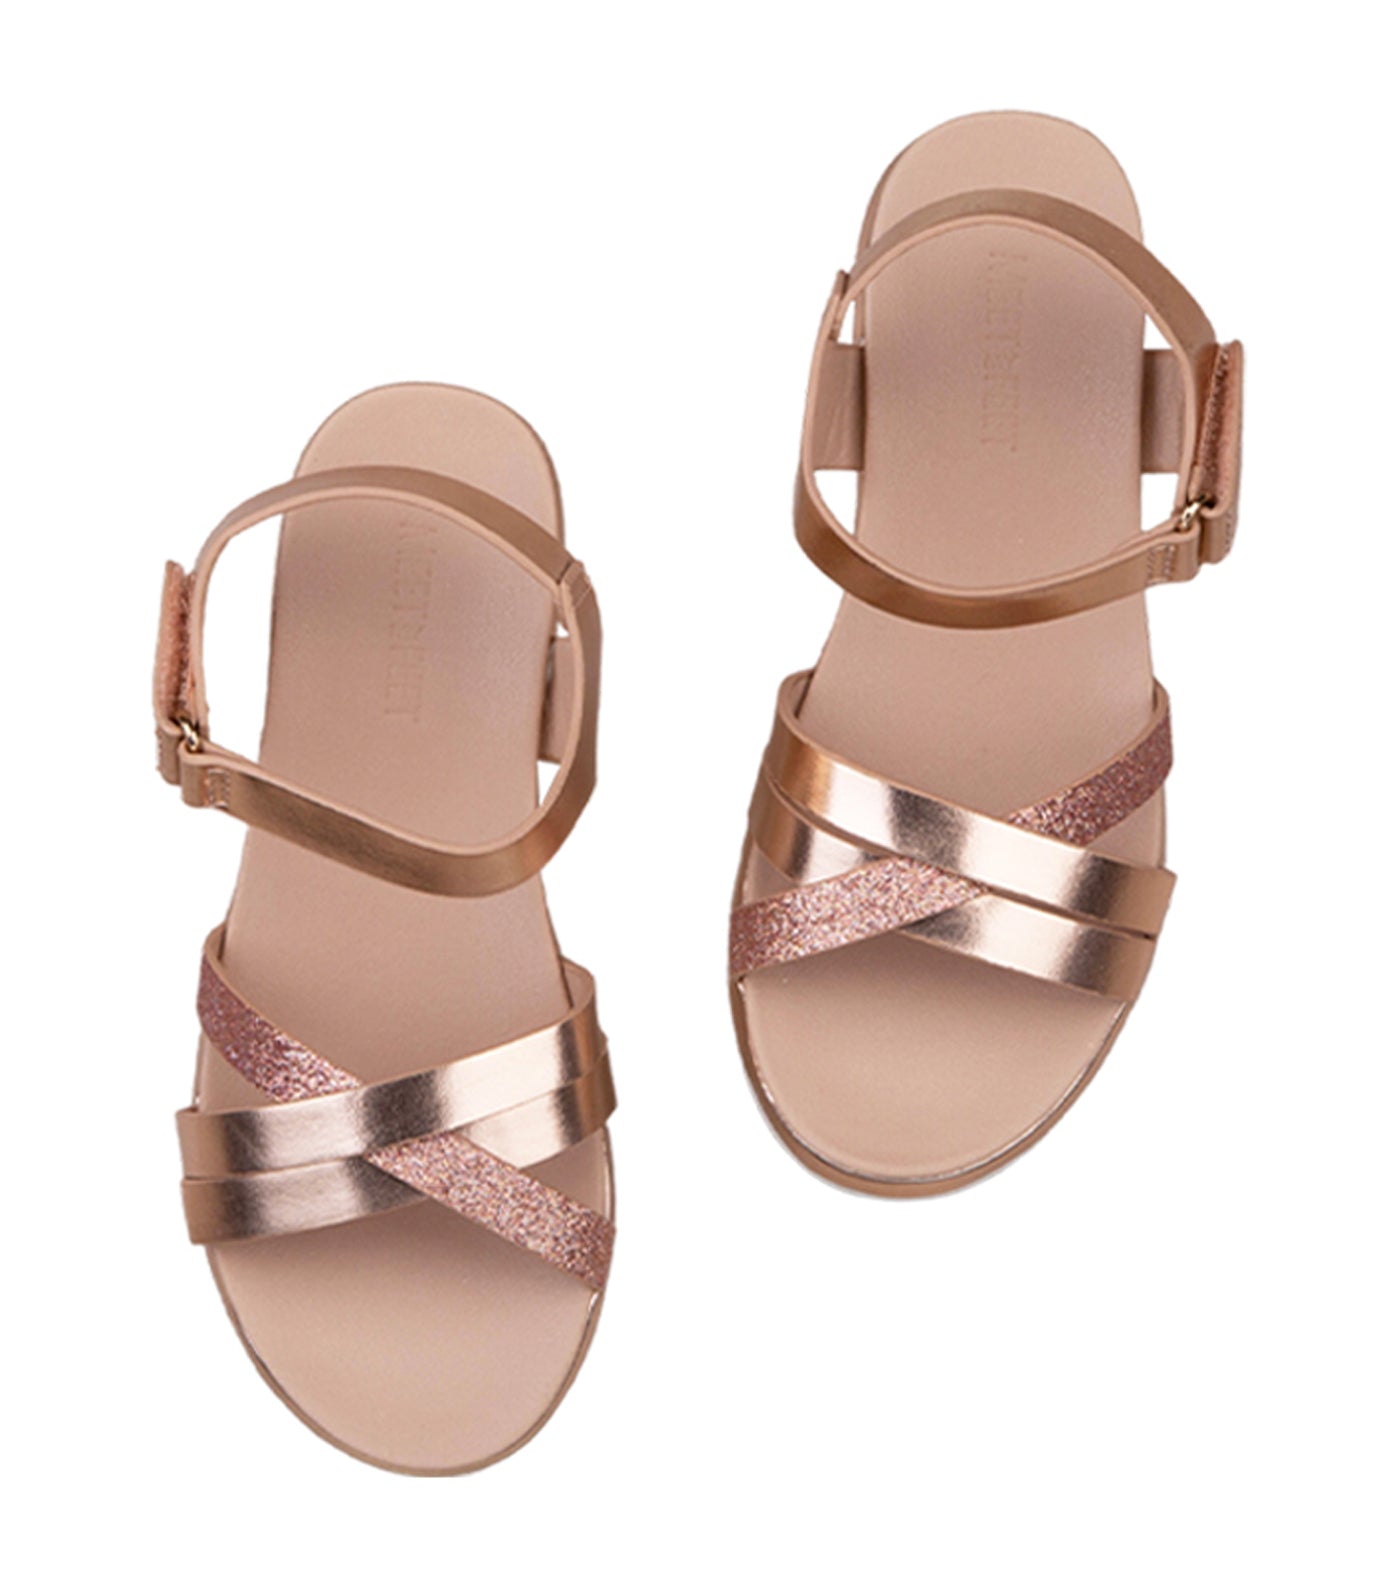 Bobbie Kids Sandals for Girls - Rosegold